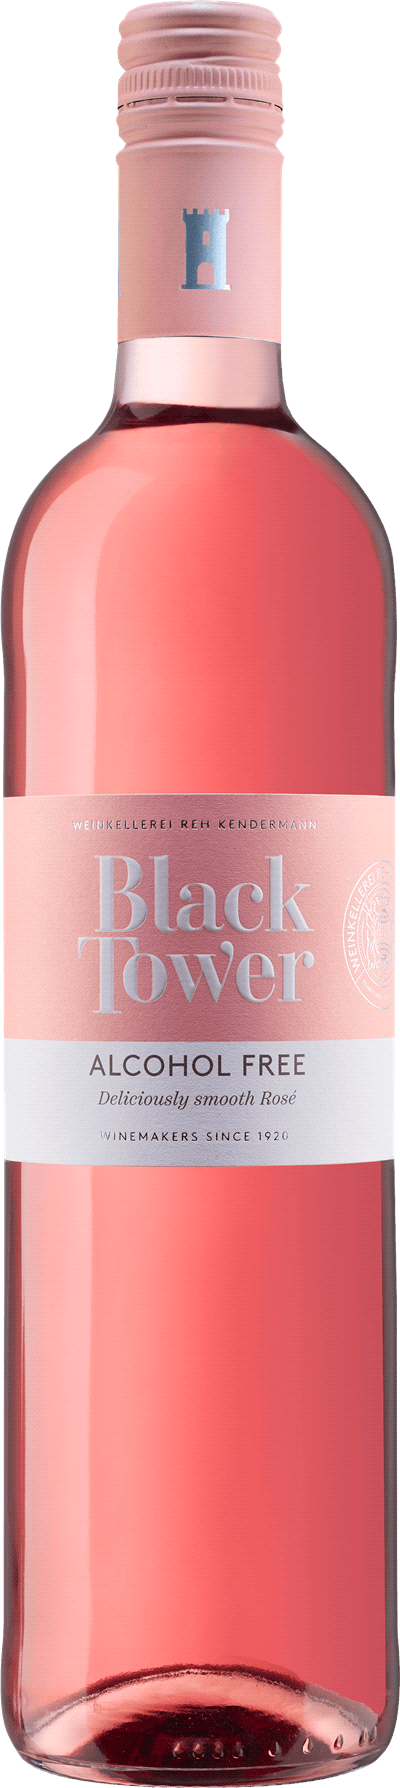 Produktbild för Black Tower